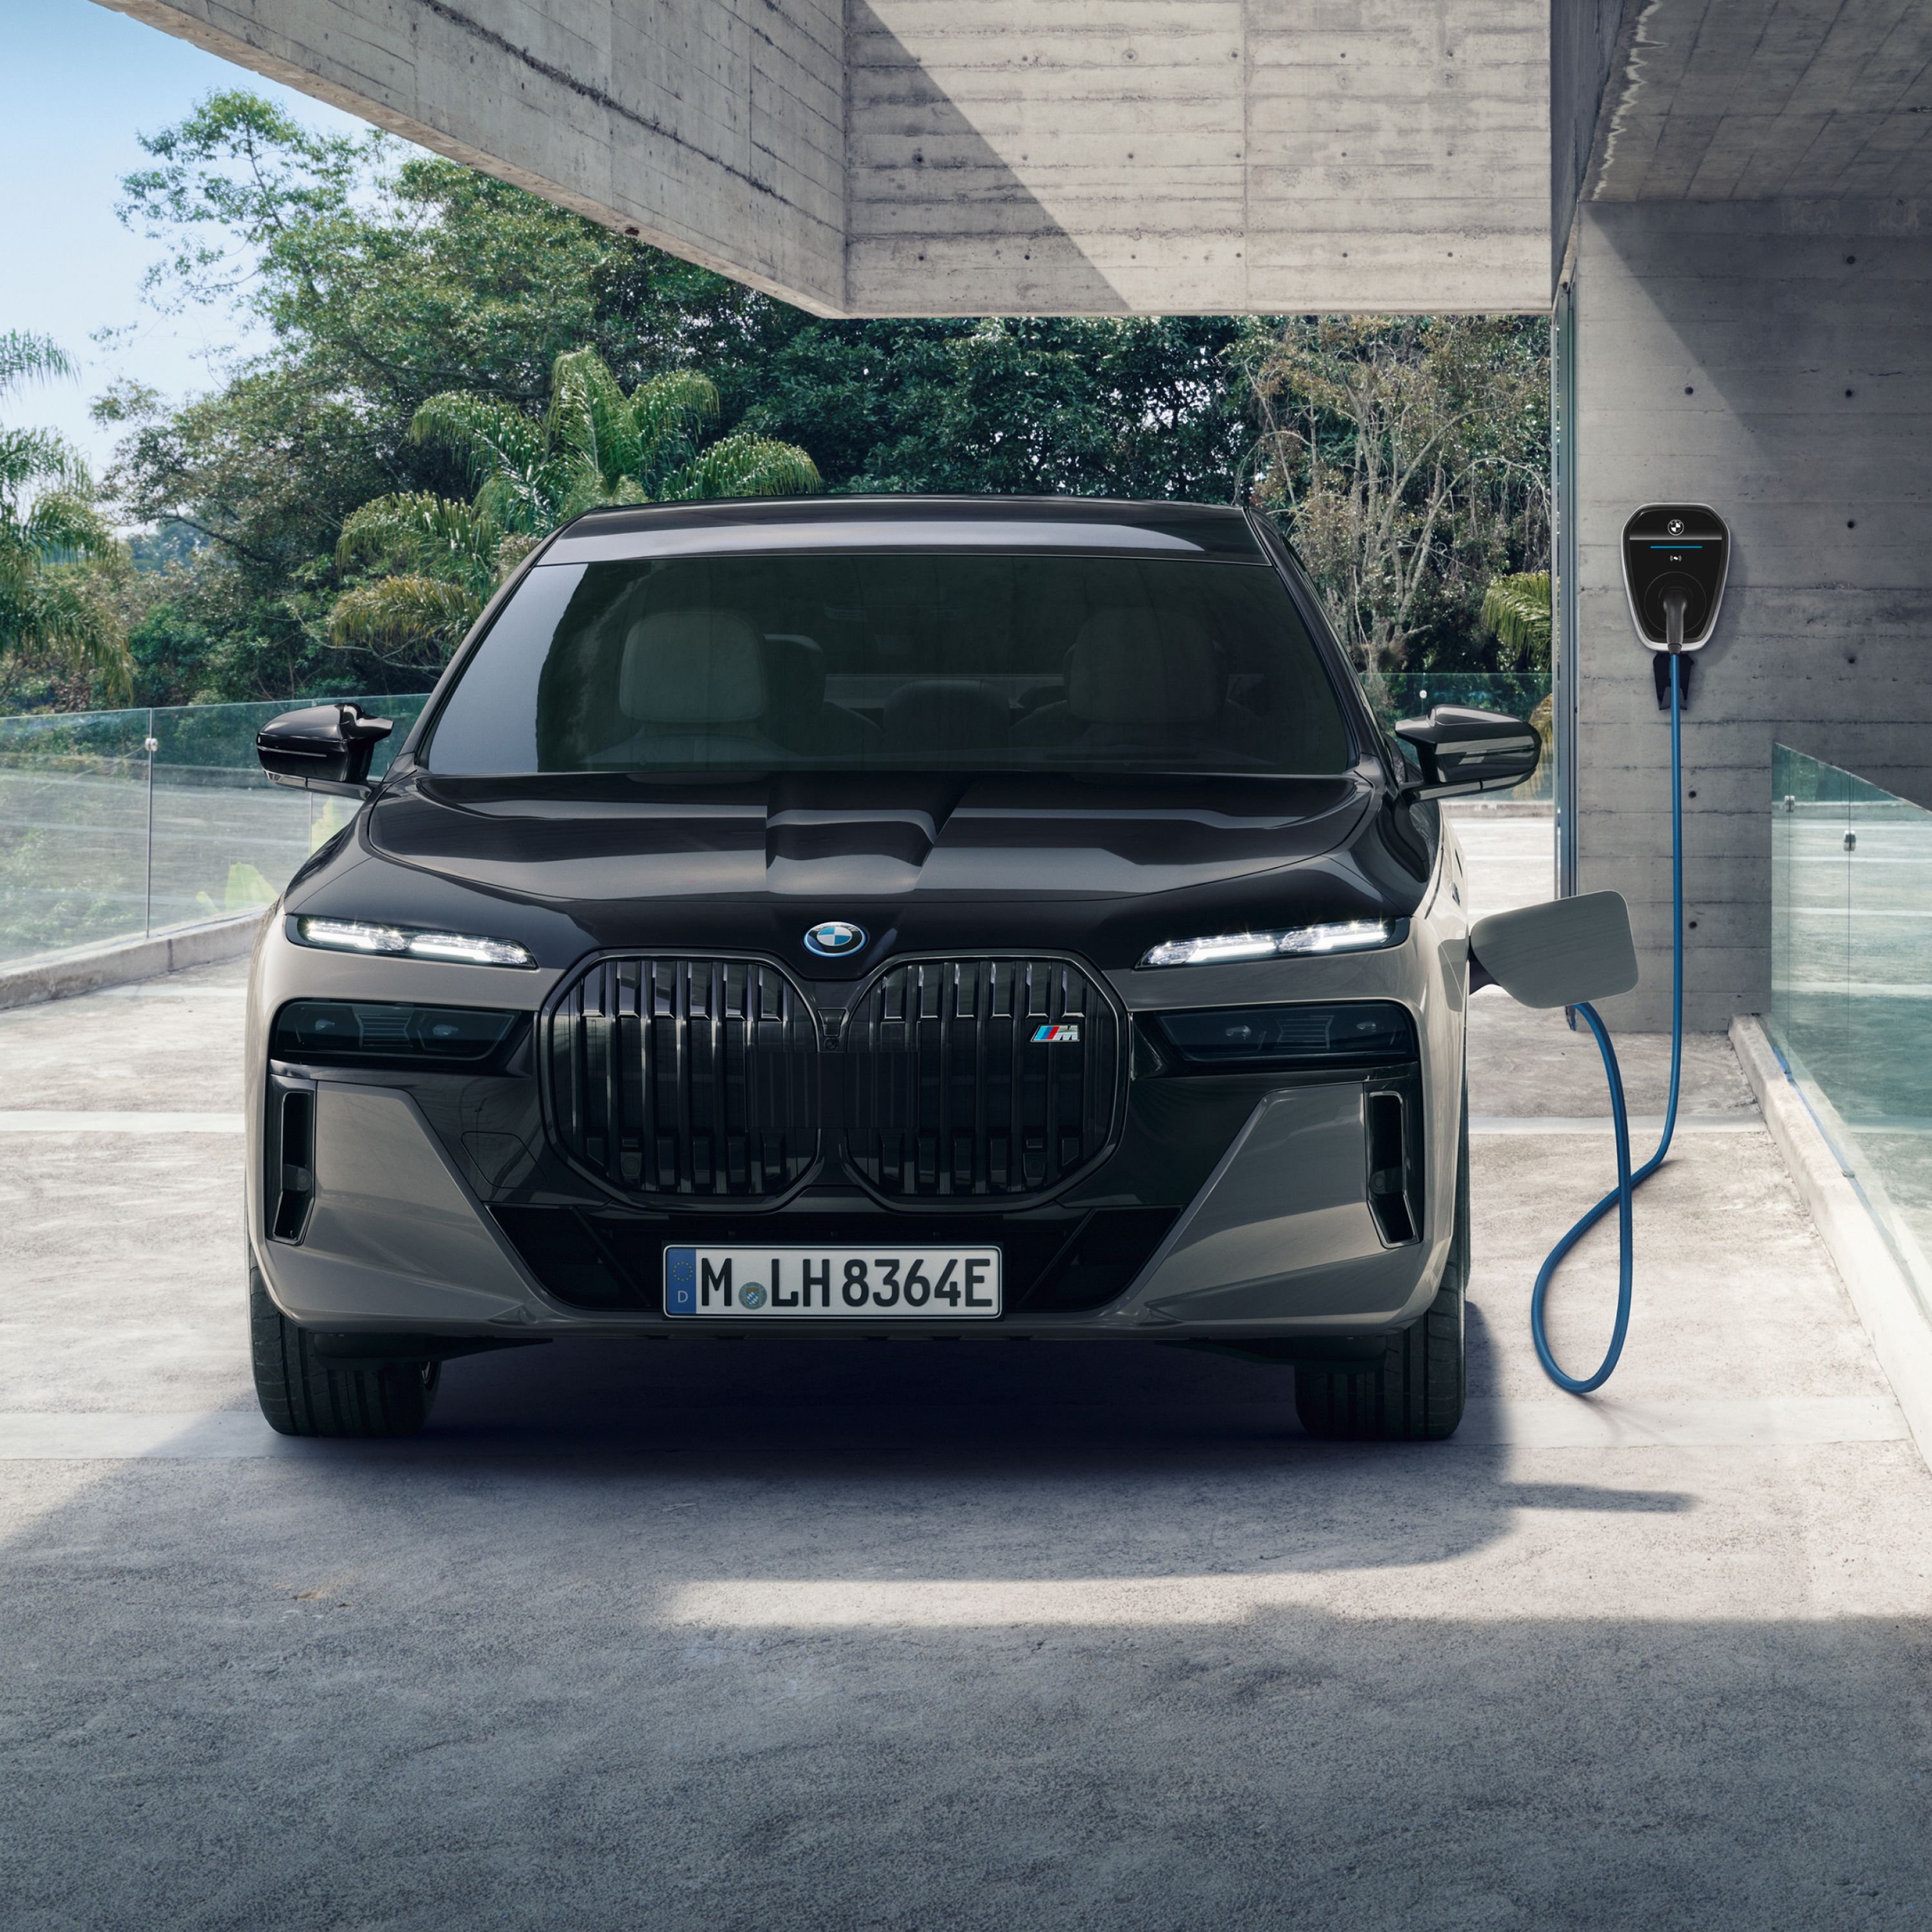 BMW Plug-in Hybrid Public Charging